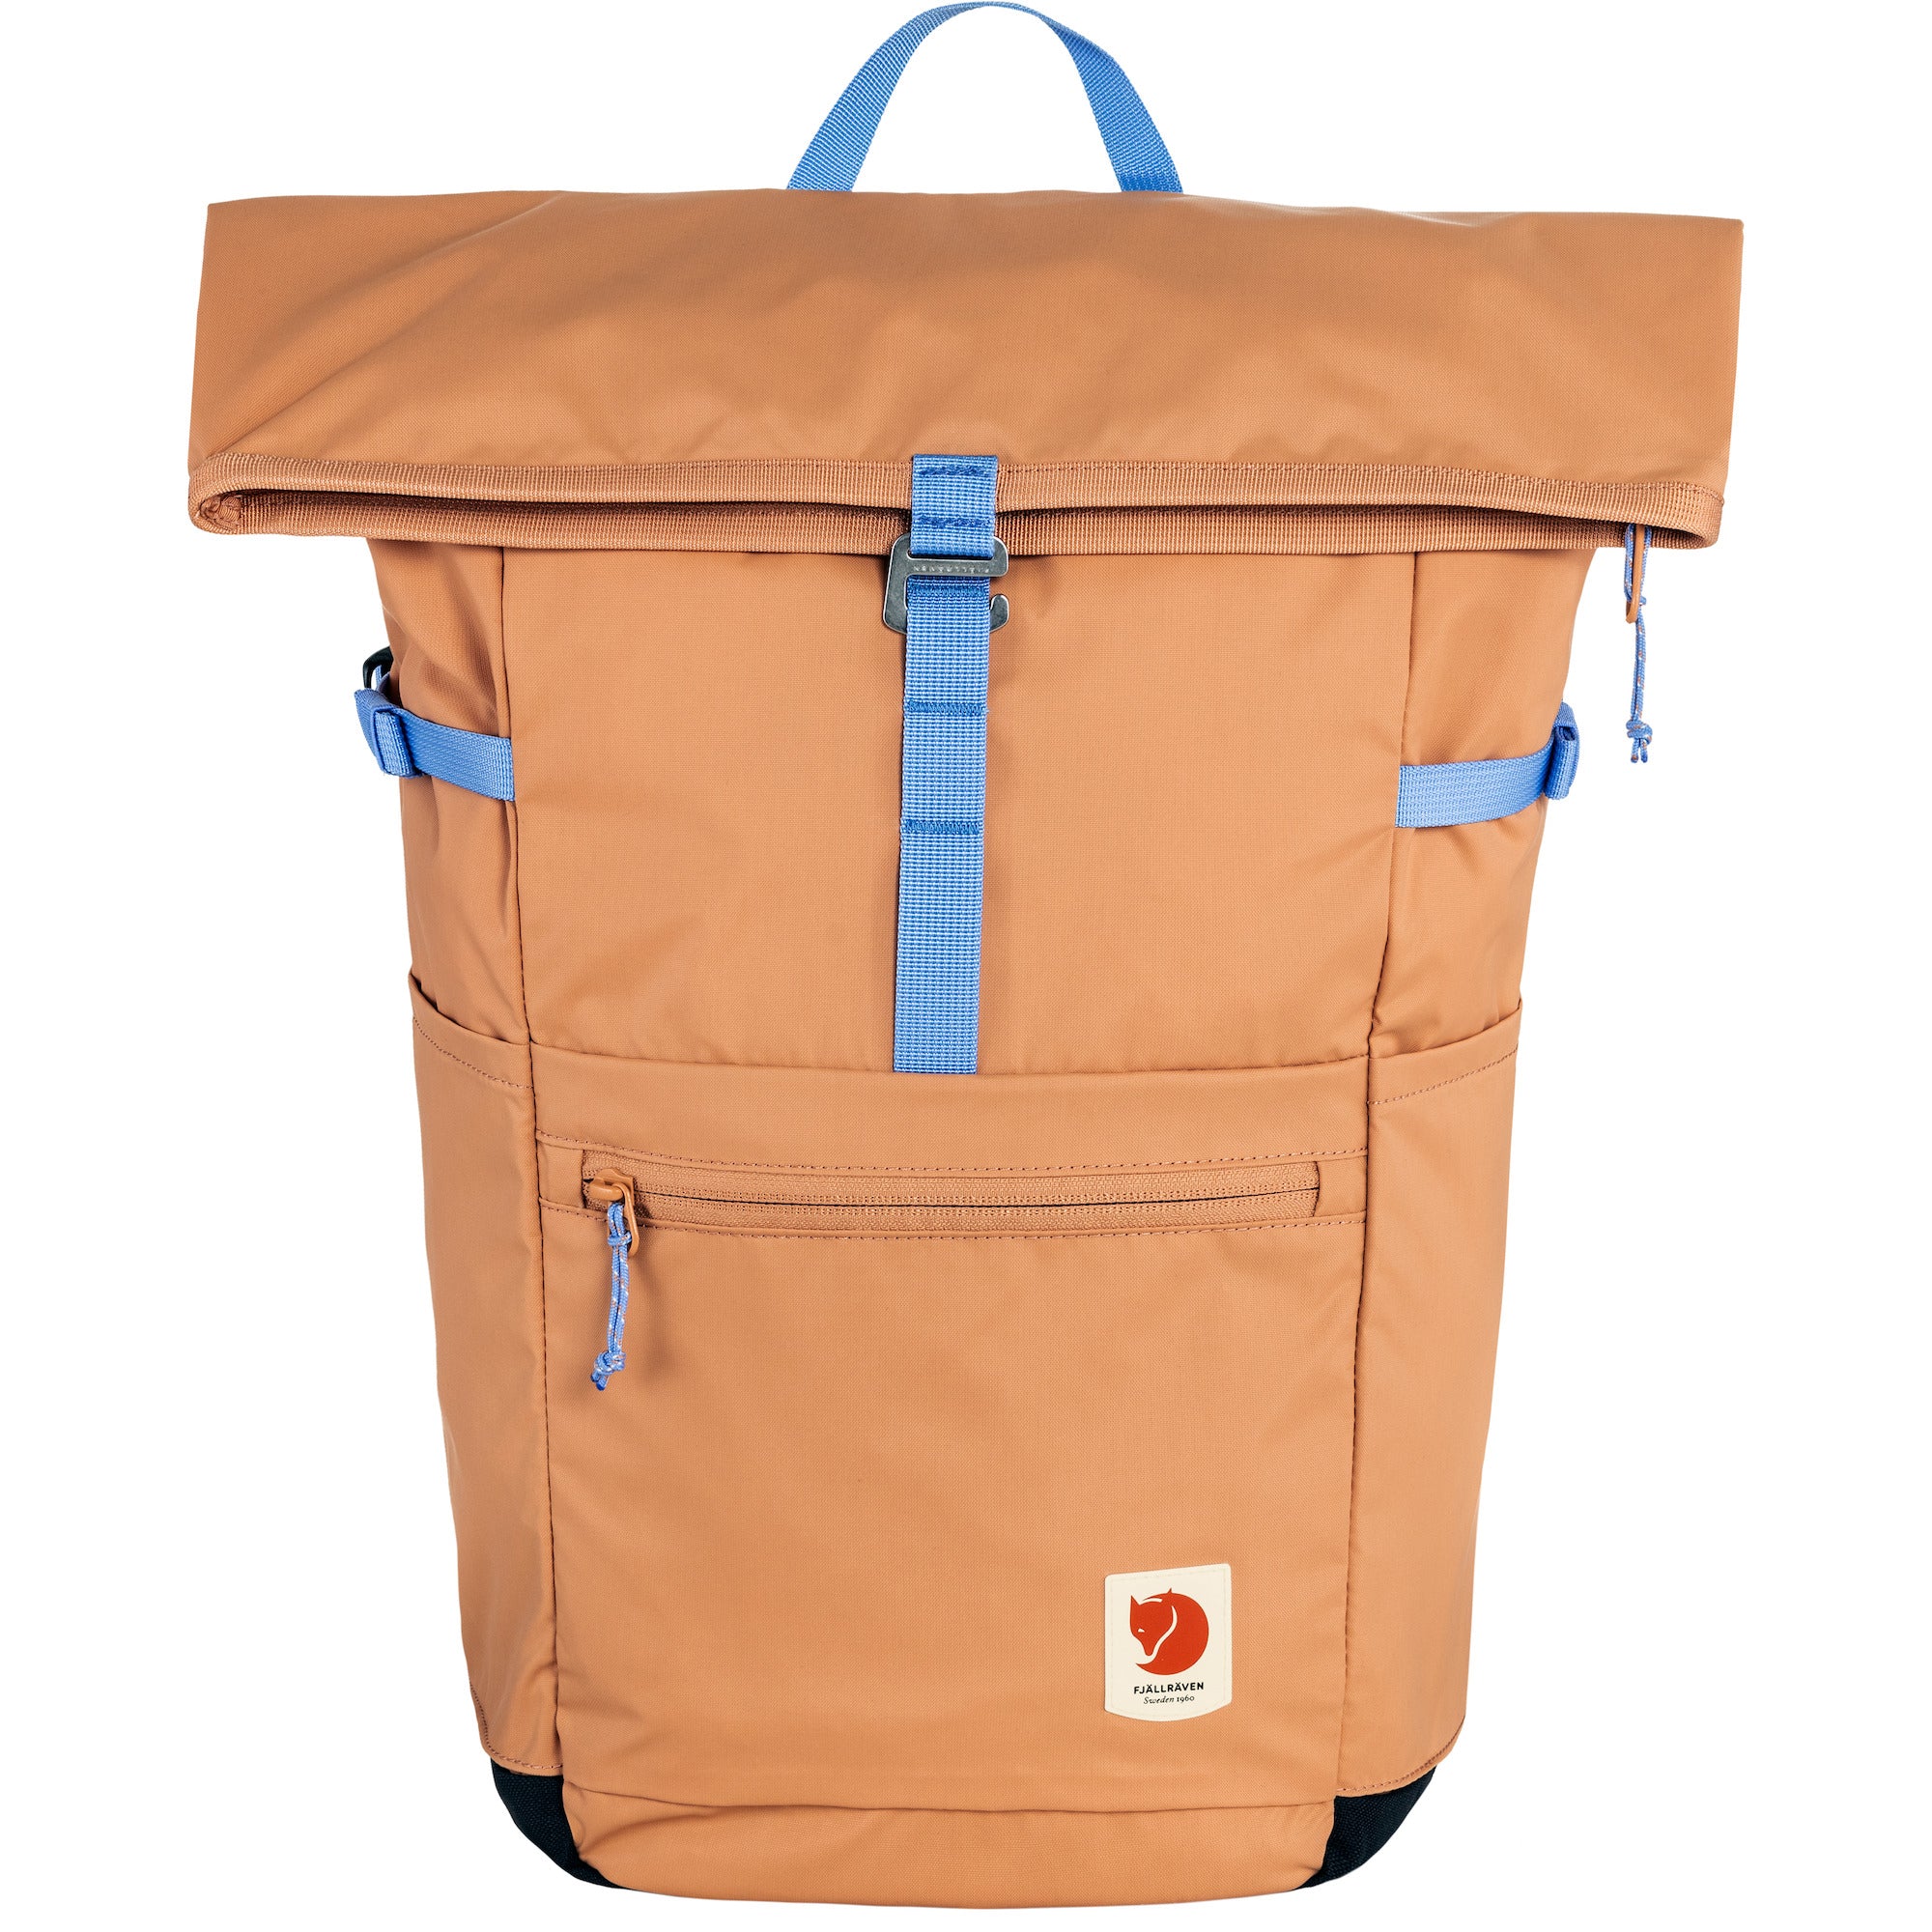 High Coast Foldsack 24L Backpack